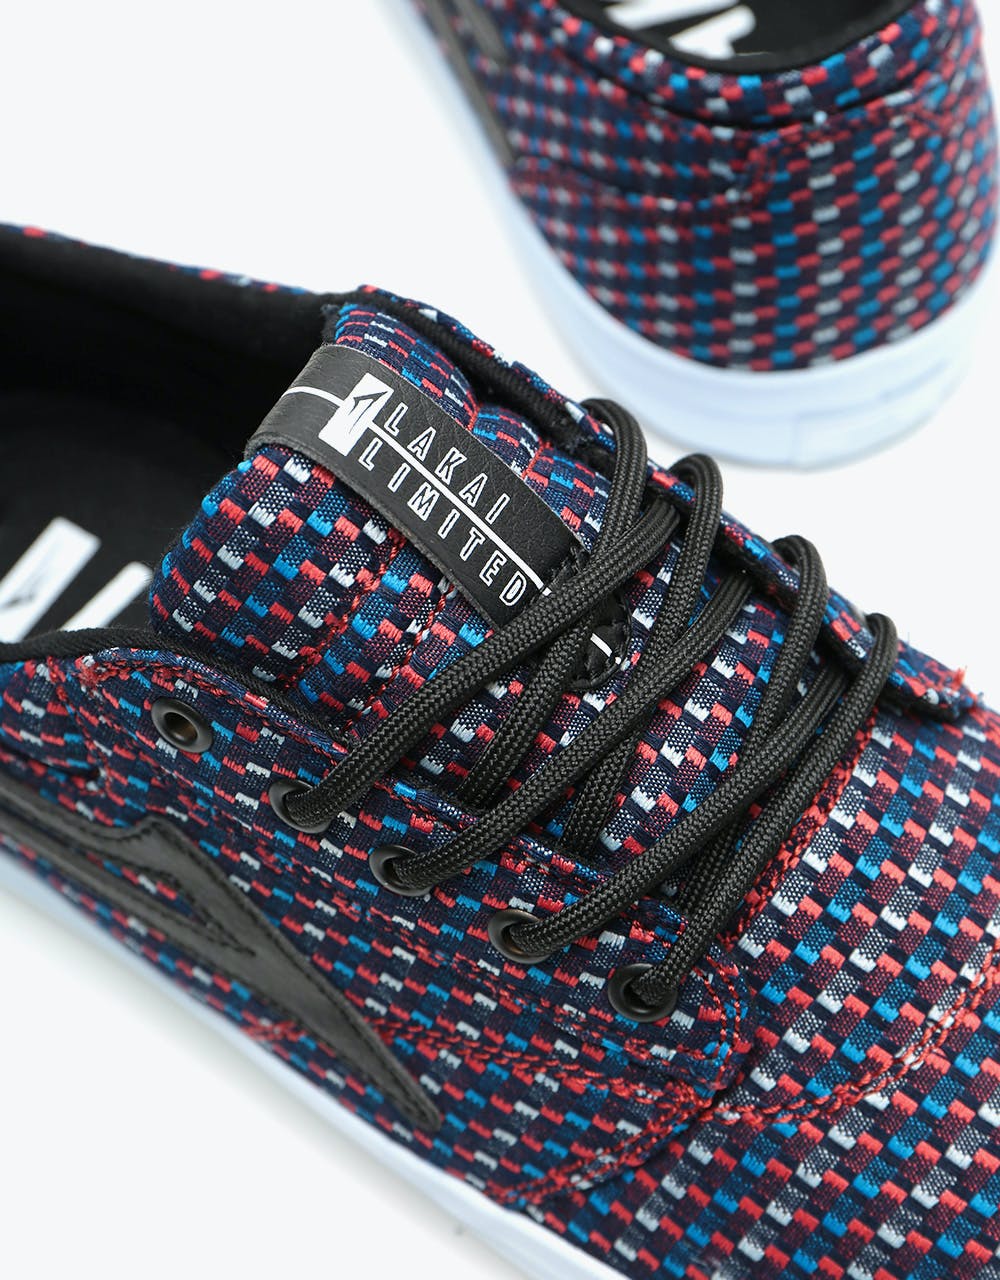 Lakai Griffin Textile Skate Shoes - Blue/Orange Checkered